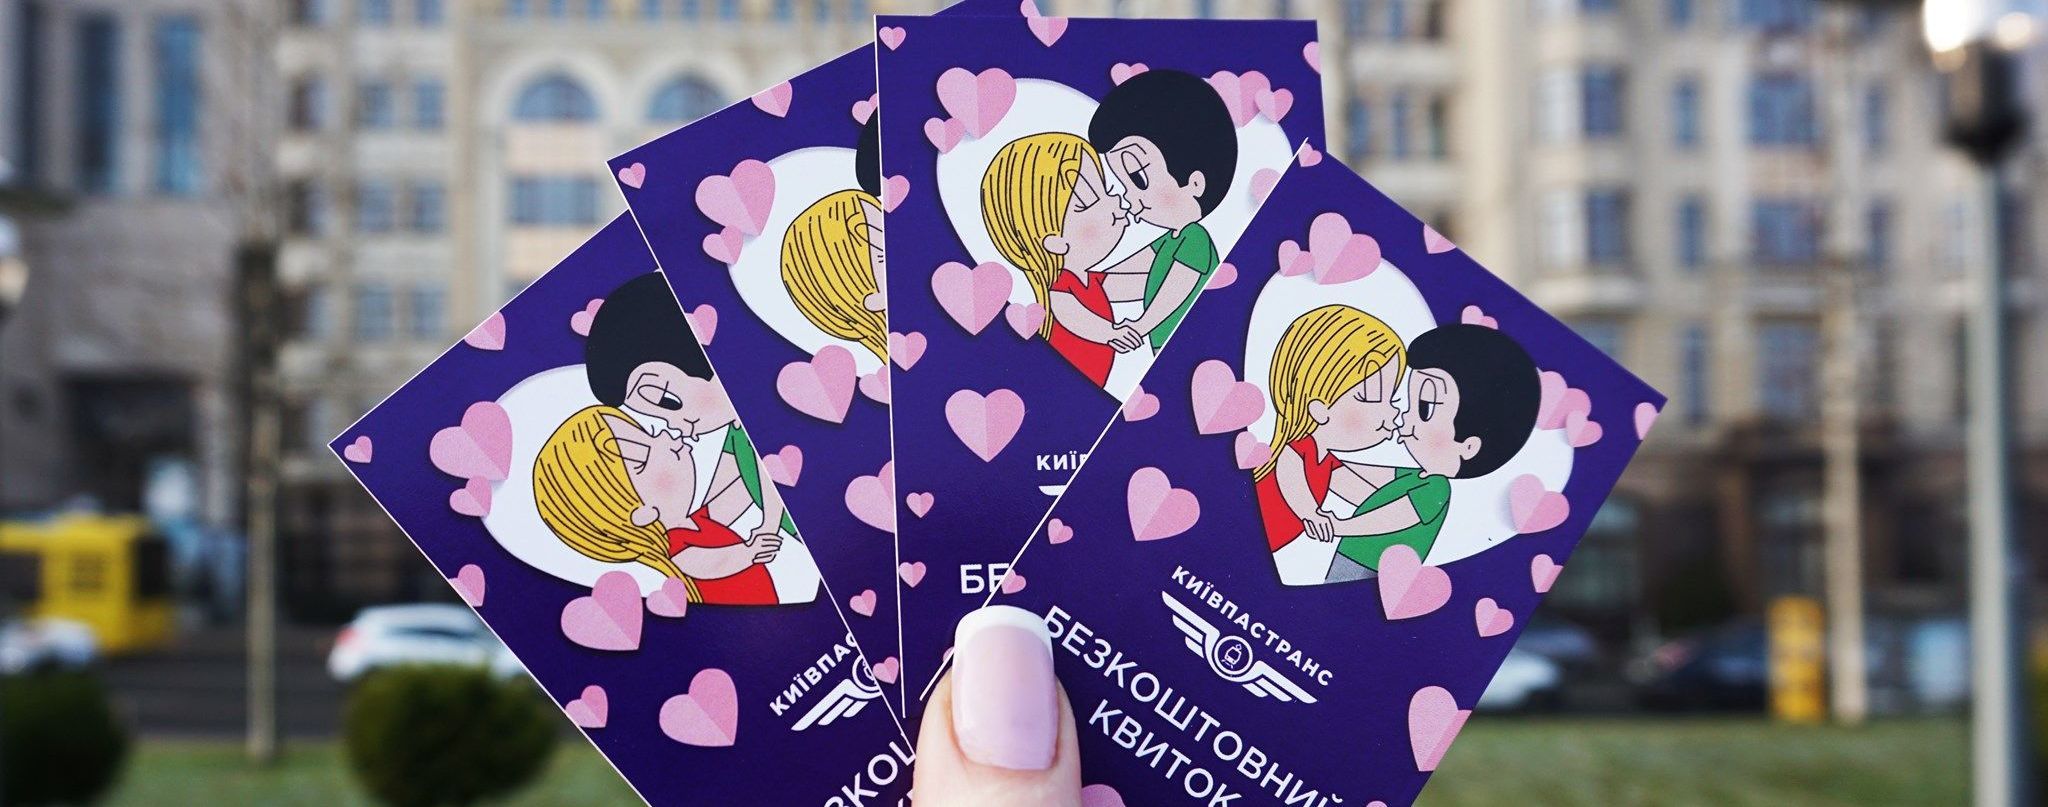 В Киеве фуникулер 14 февраля подарит всем влюбленным бесплатный проезд